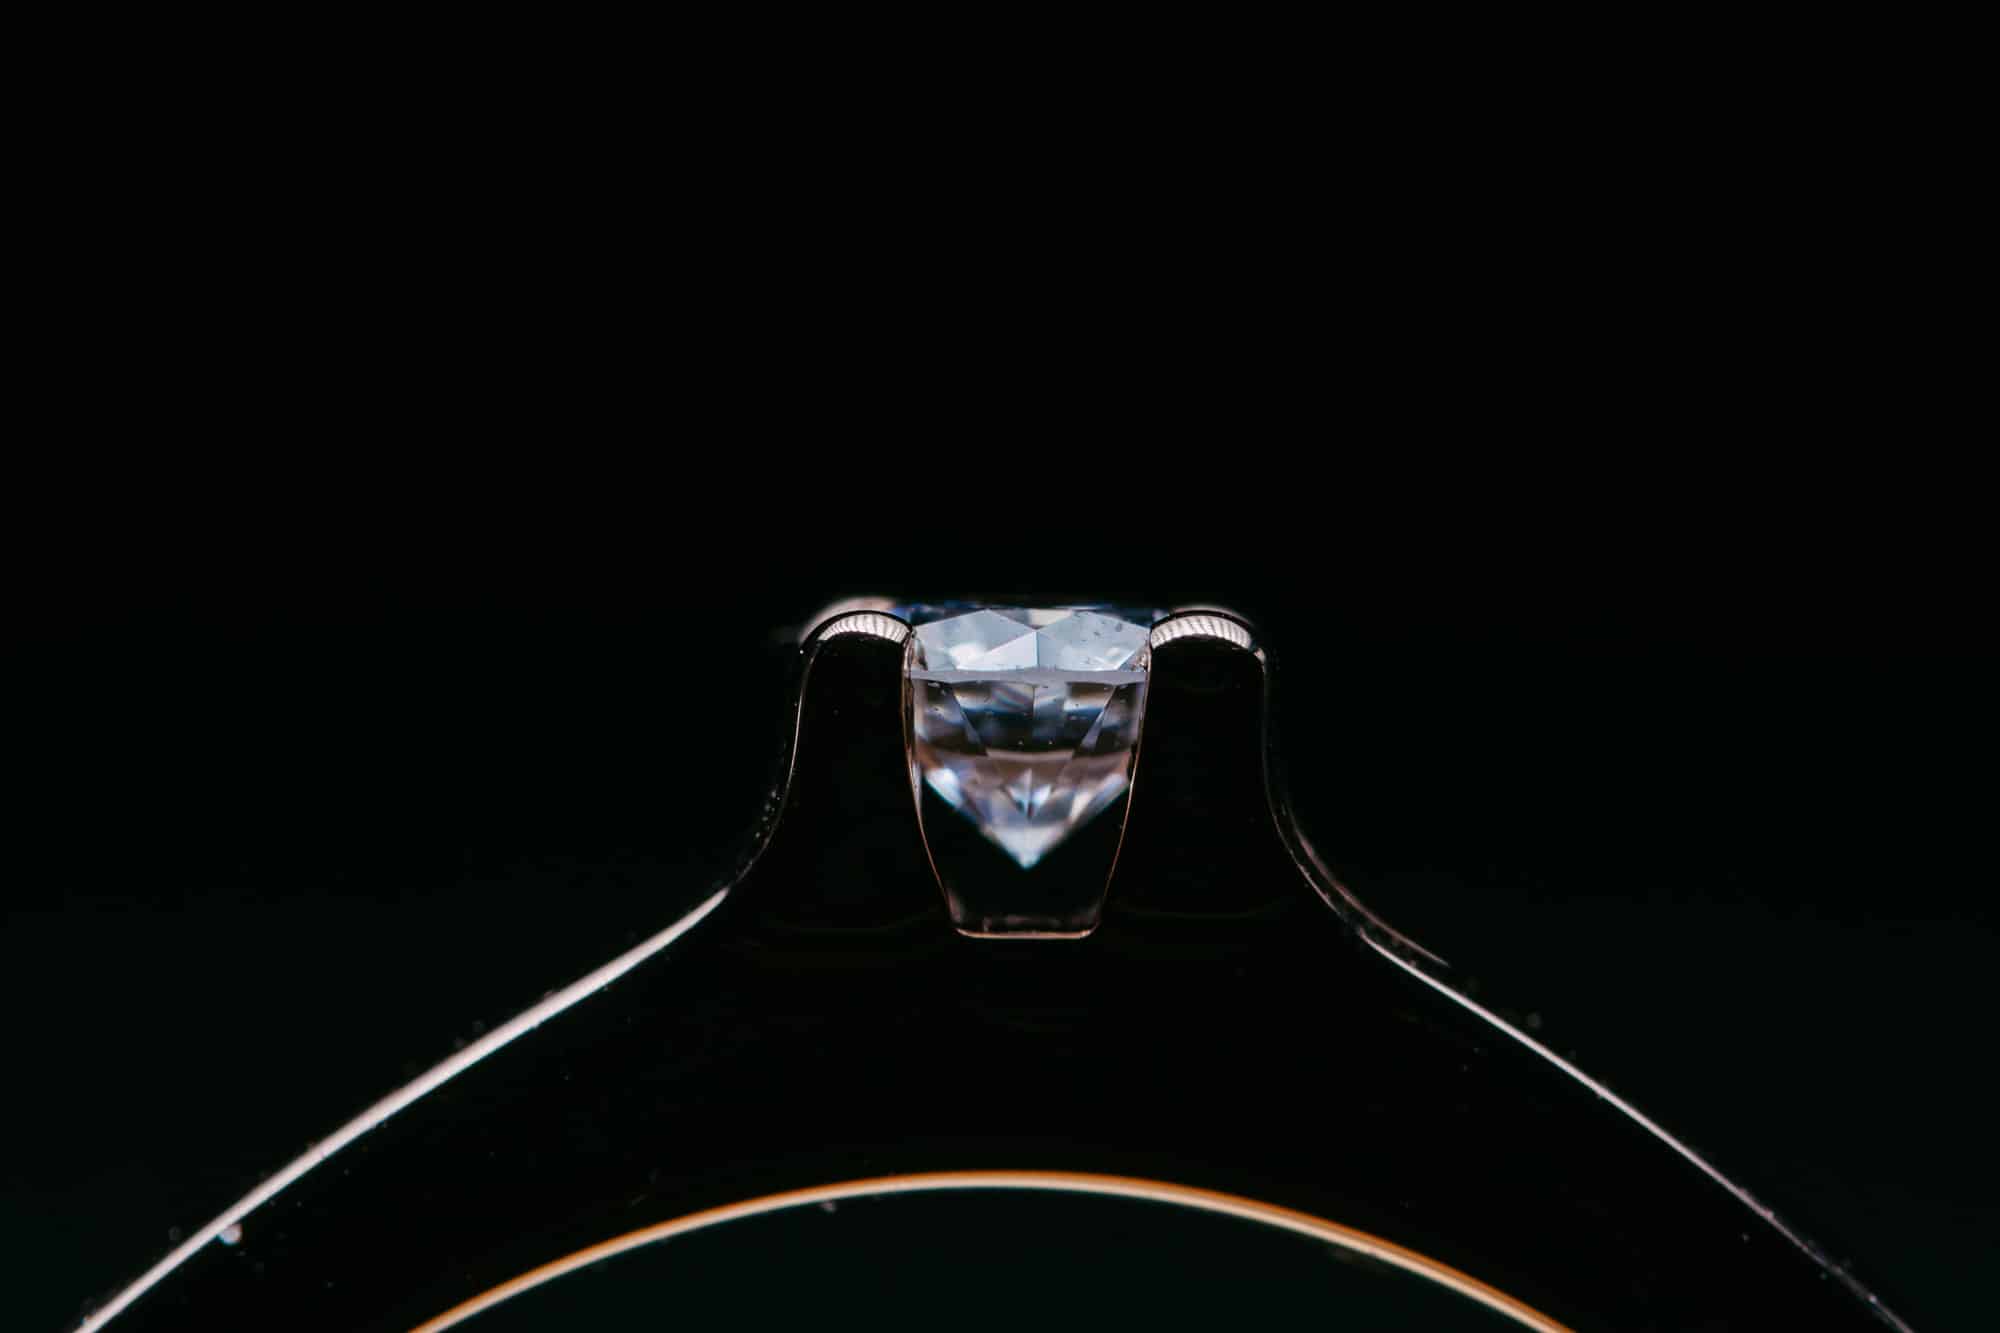 Een close-up van een verloofde diamanten verlovingsring op een zwarte achtergrond.